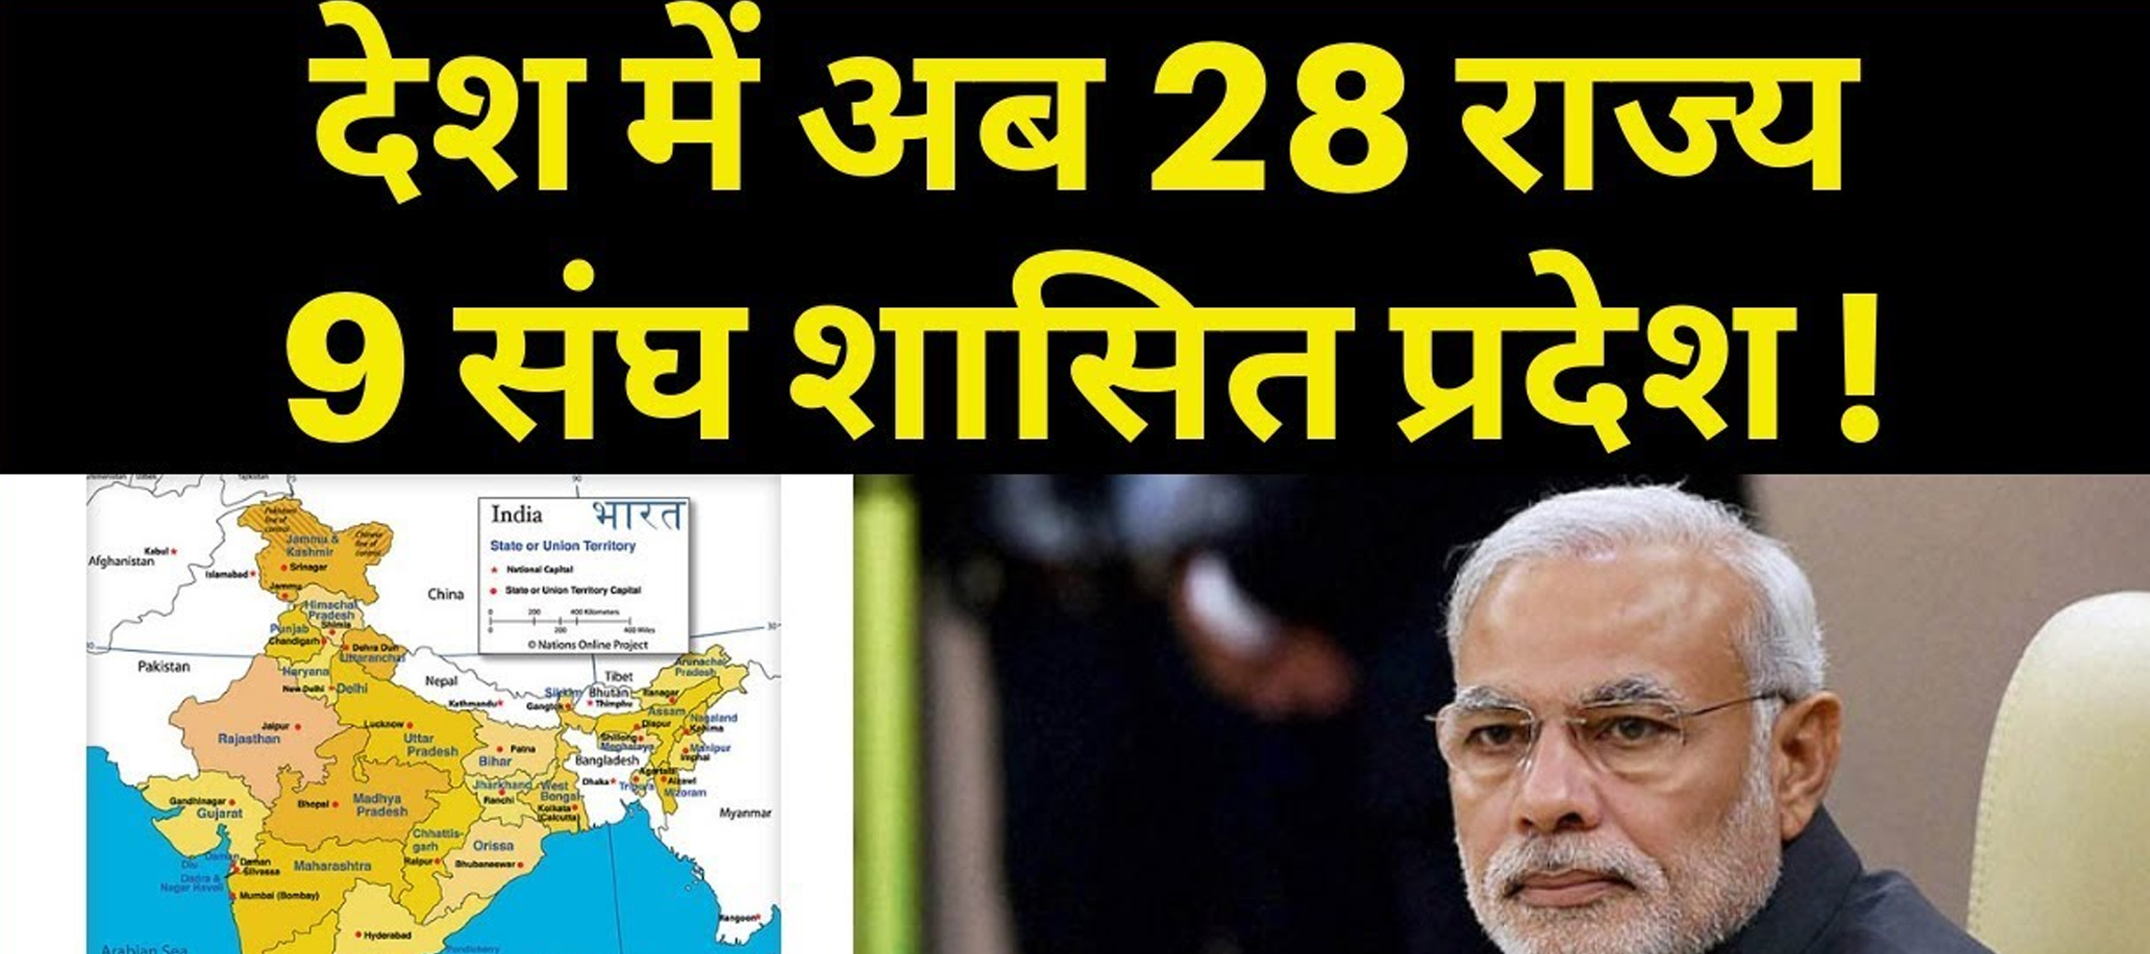 28 states, 9 Union Territories in India